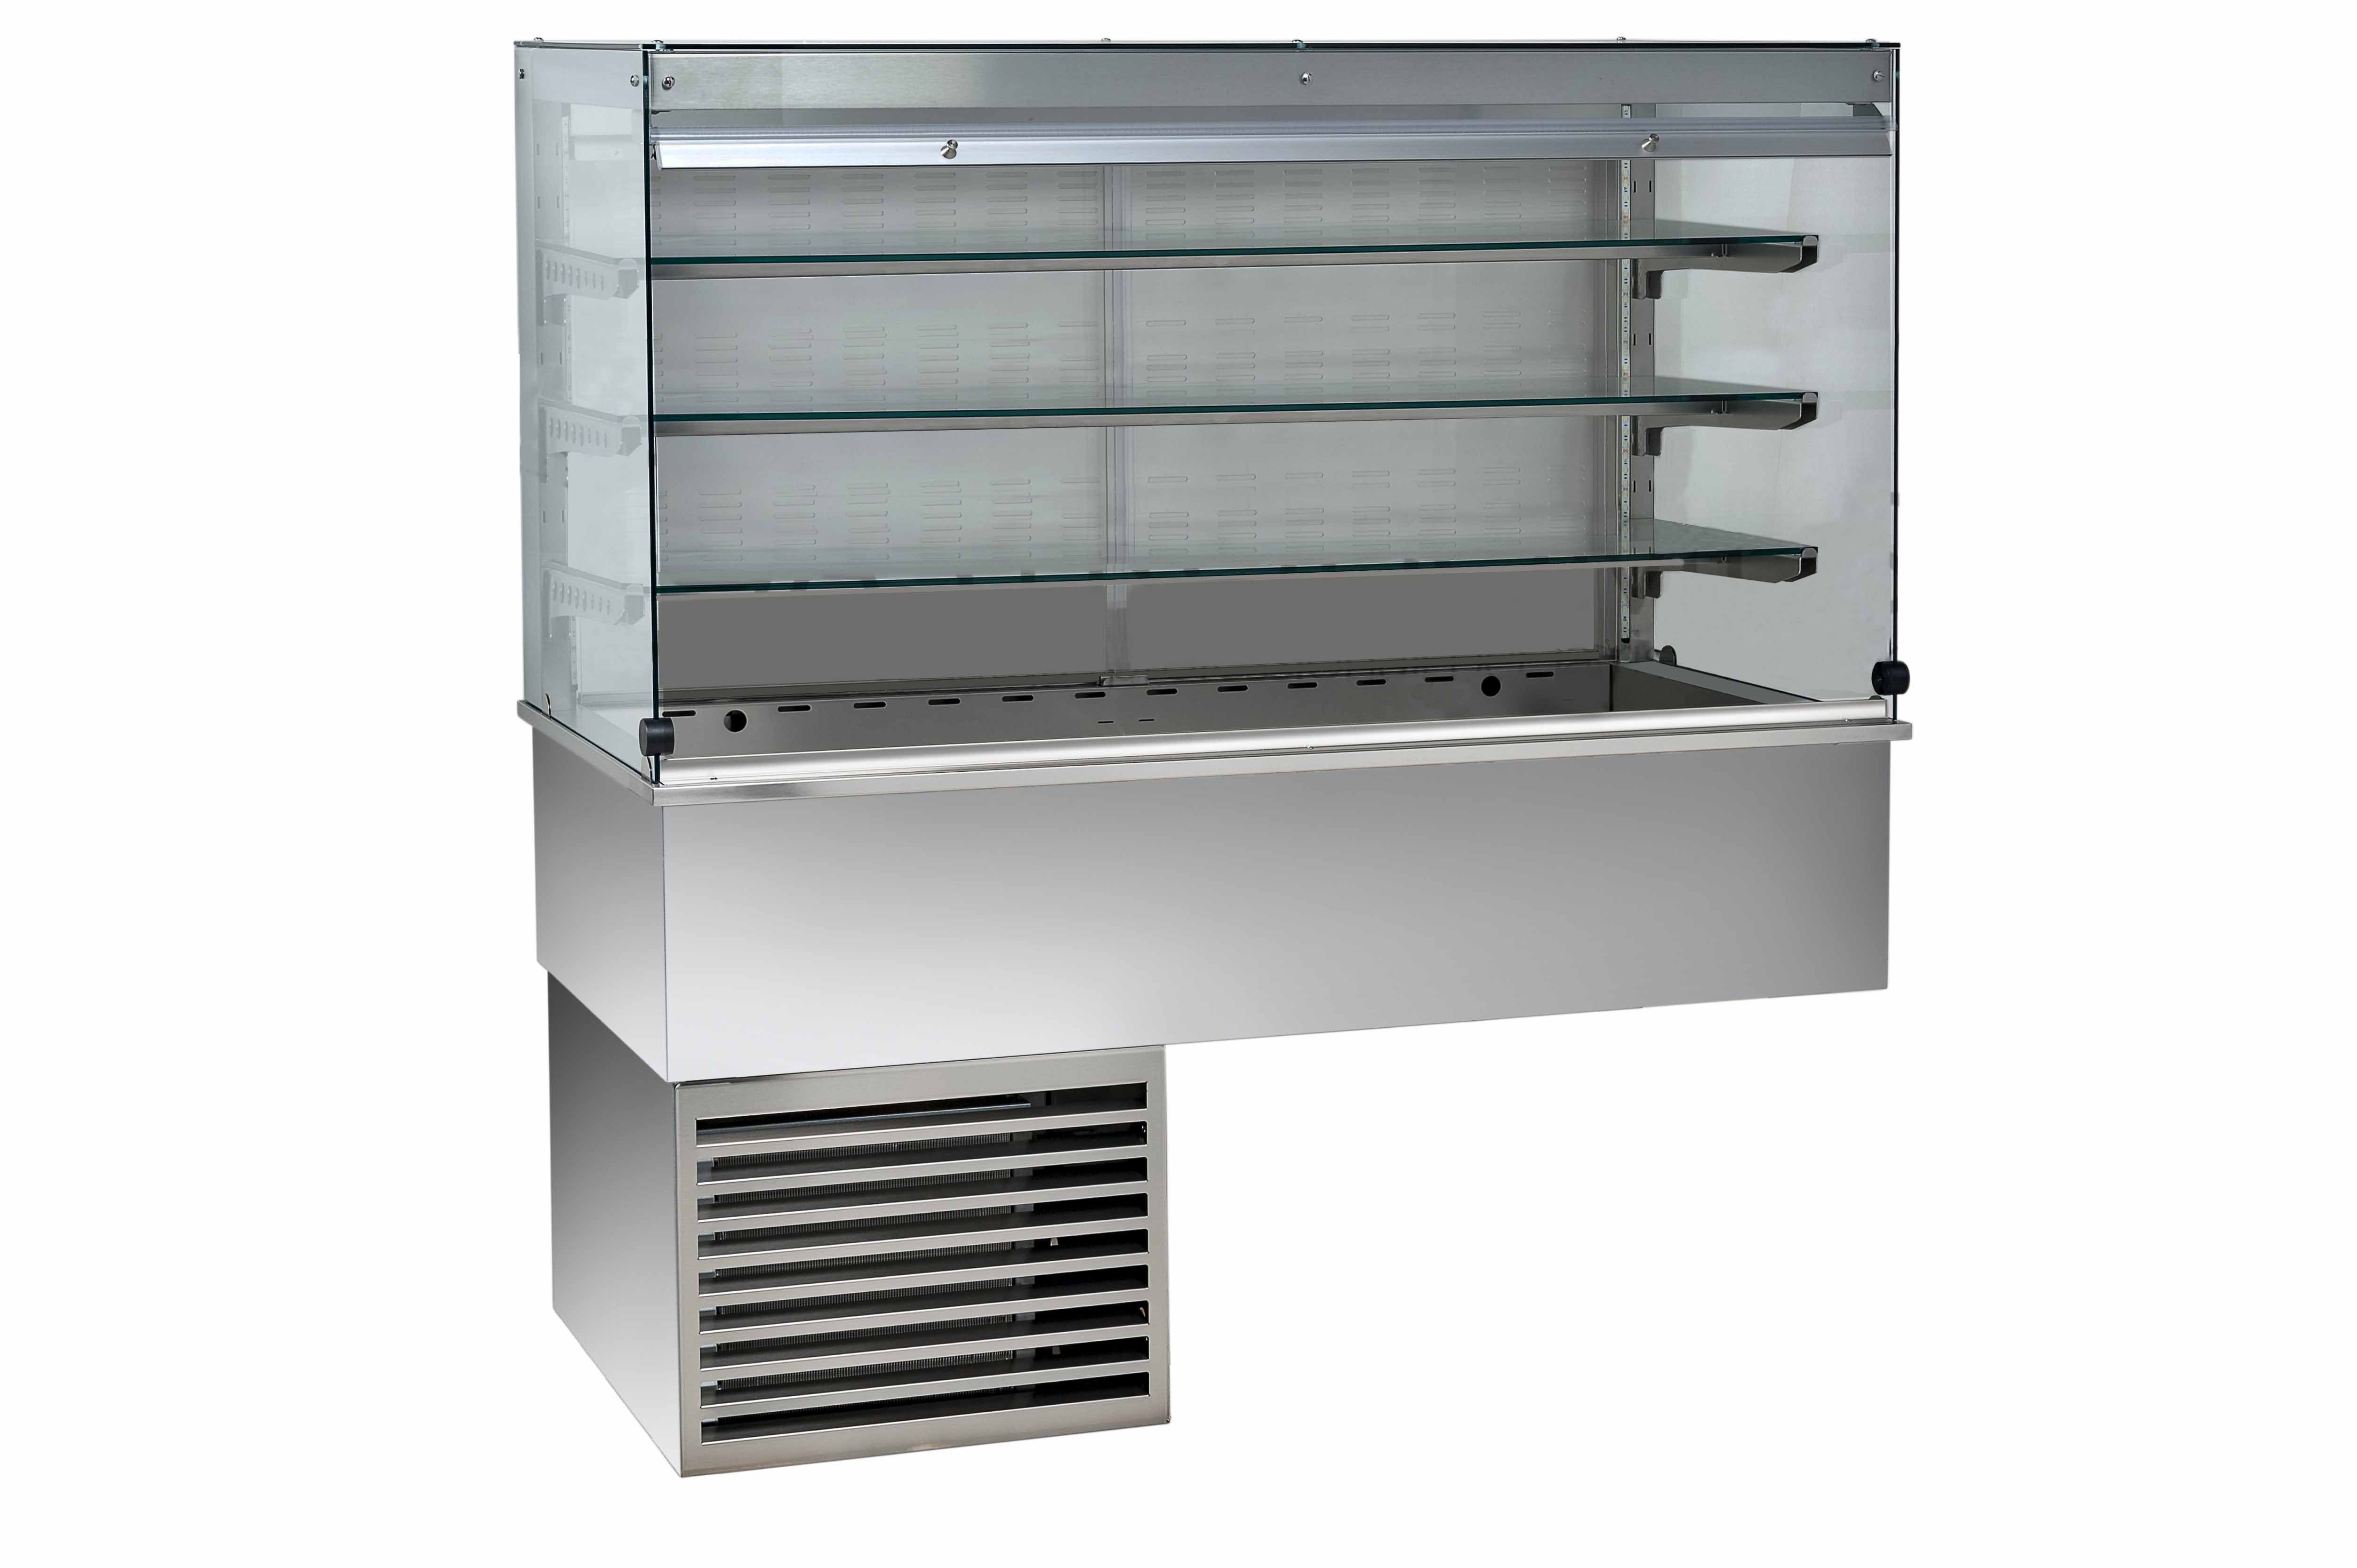 Kühlvitrine – Umluftkühlung – kubisch – 3 Ablagen – Kundenseitevorhang – B 1460 mm